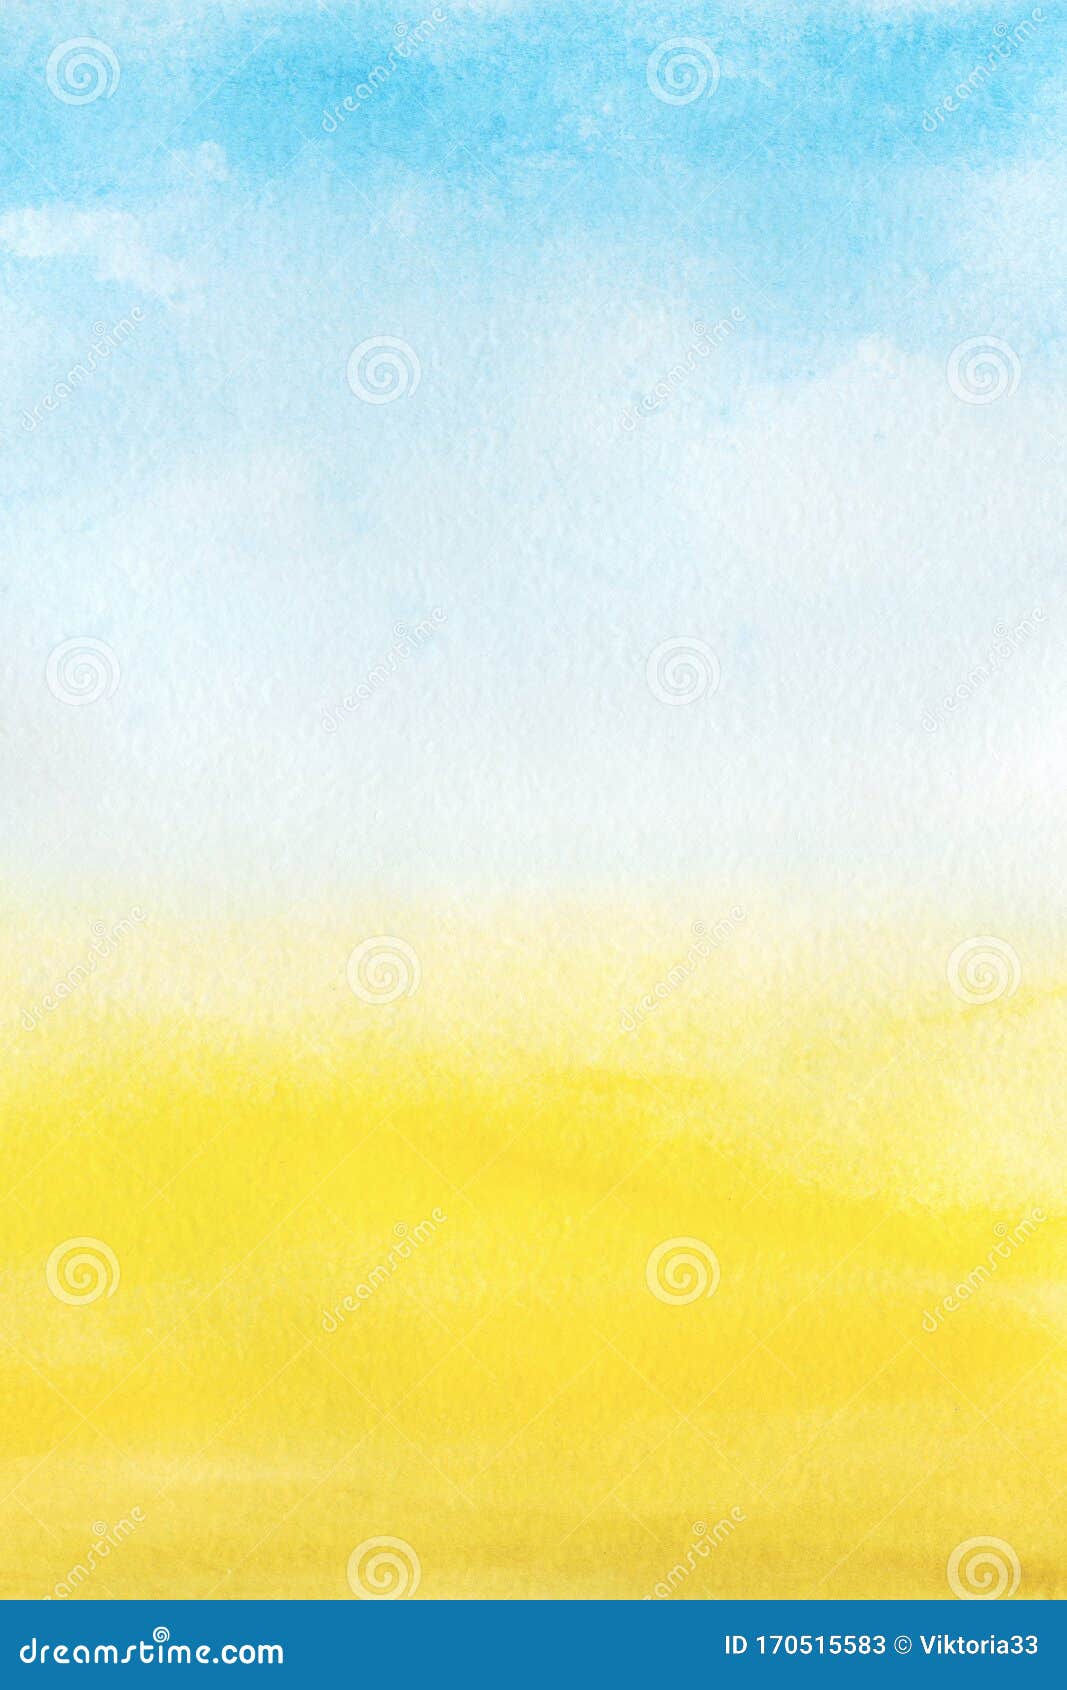 Đừng bỏ qua cảnh tuyệt đẹp của bầu trời xanh vàng rực, khi mây trôi nhẹ và tạo thành những họa tiết lung linh, tuyệt đẹp. Màu vàng và màu xanh của bầu trời này khiến người ta liên tưởng đến những ngày hè tươi vui, đầy năng lượng và cũng chính là lời mời gọi cho bạn đến khám phá.